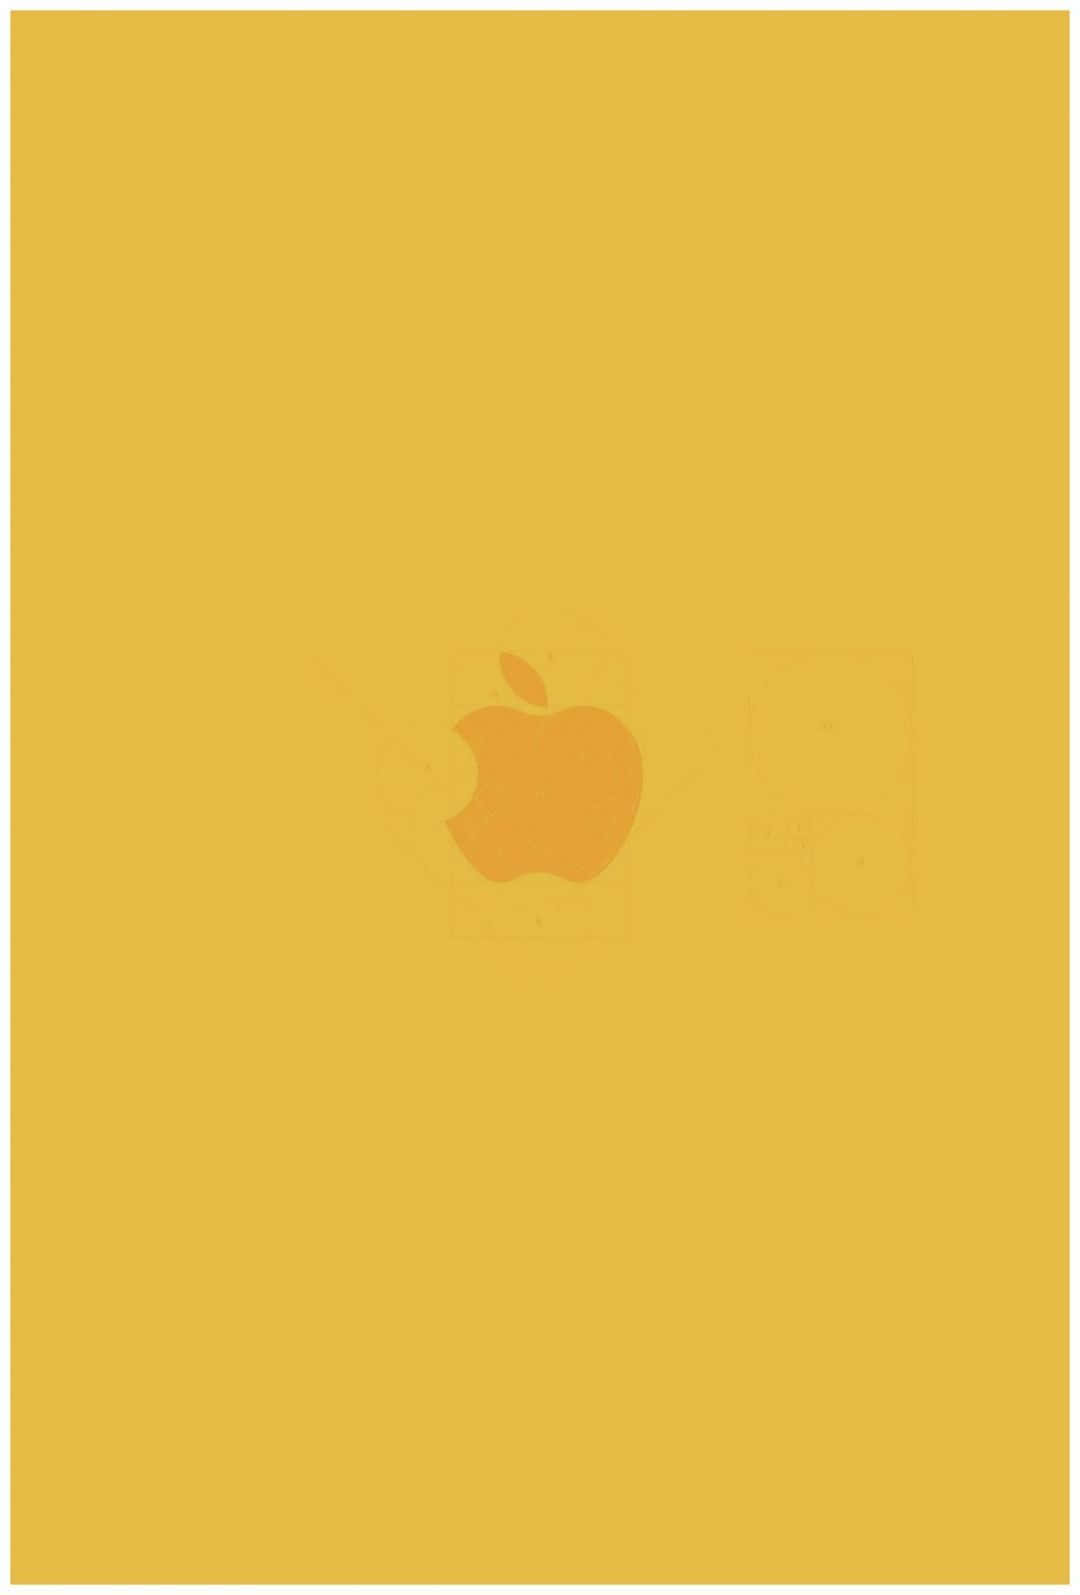 Nyd de solfyldte vibes af gul æstetik med Iphone. Wallpaper